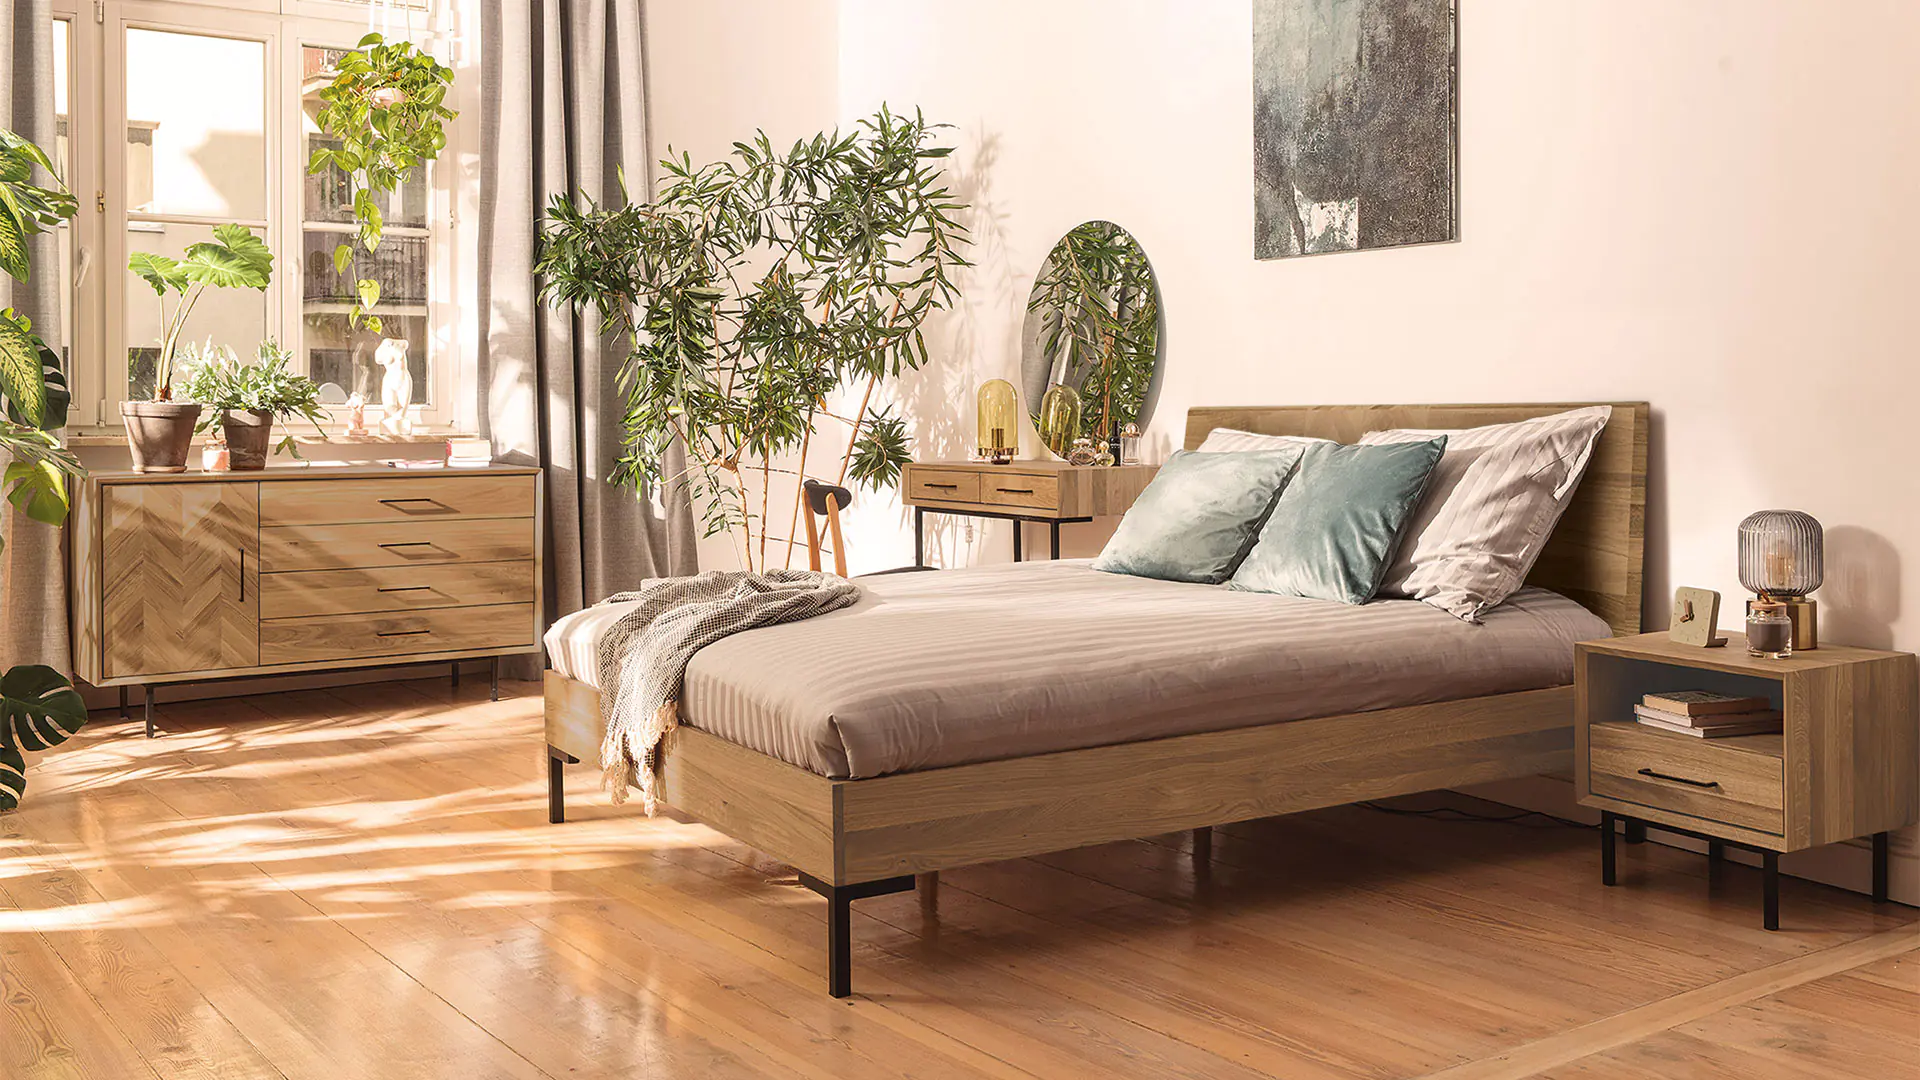 Massief houten bed Parquetta, massief wild eiken